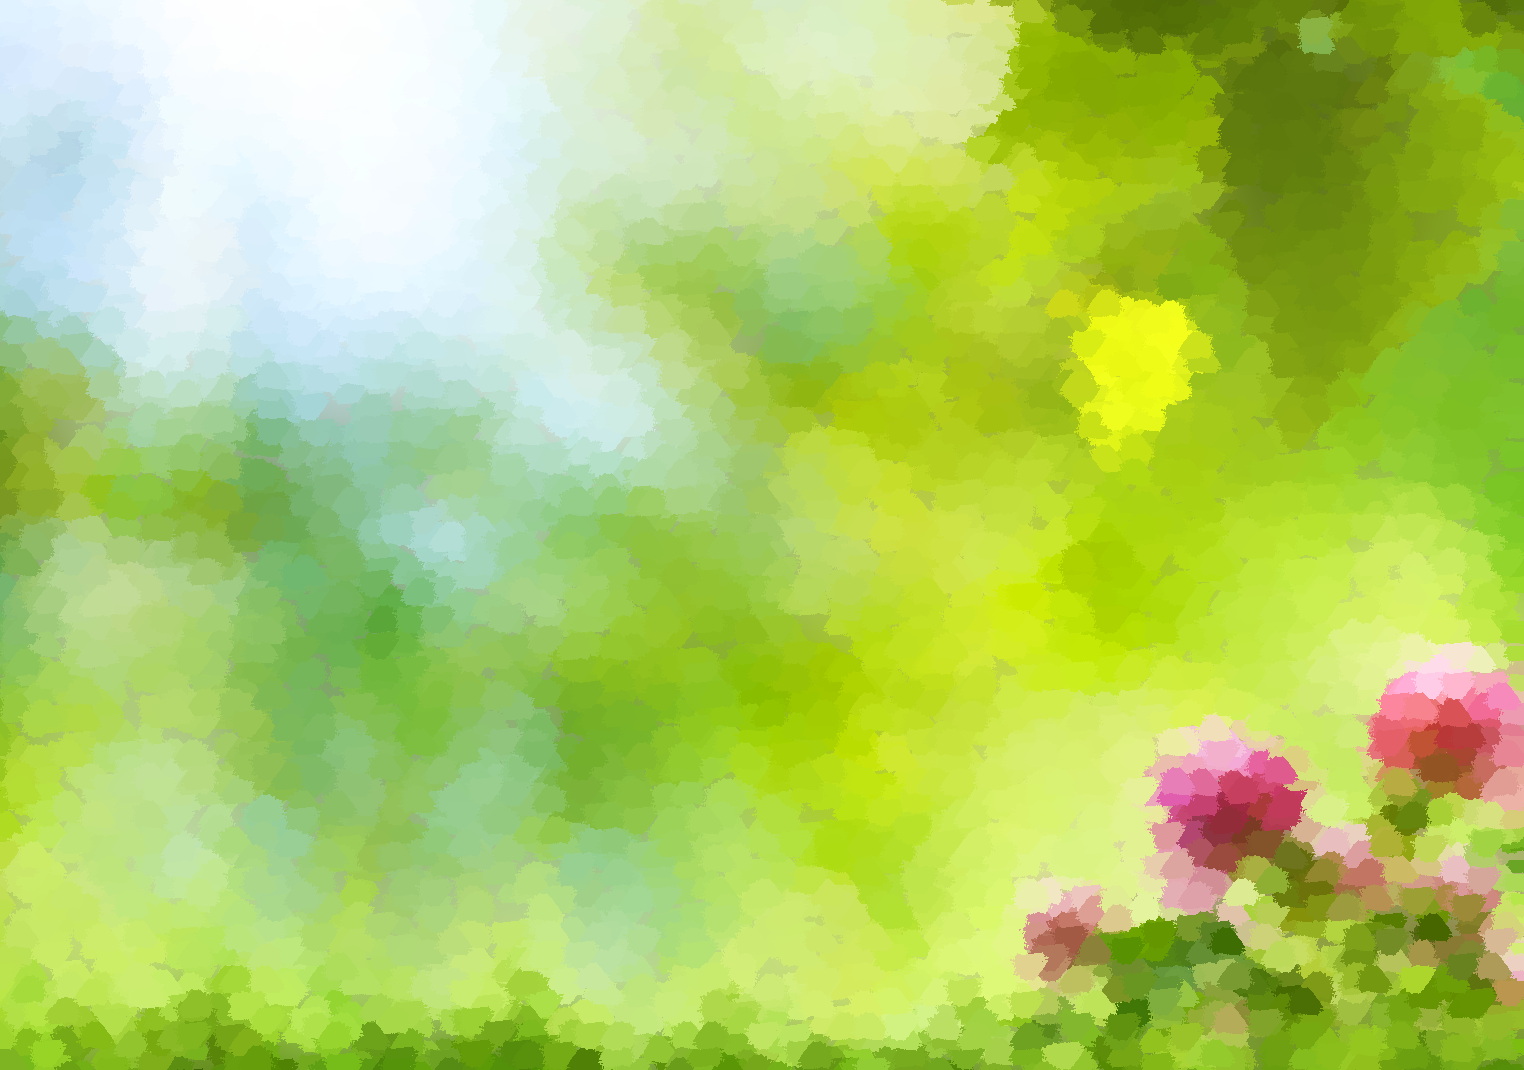 Målfrids Kreation: Ein bezauberndes Strickmuster mit vierblättrigen Kleeblättern für das Tora-Puppenkleid - Ein Frühlingswunder in Erwartung des kommenden Sommers